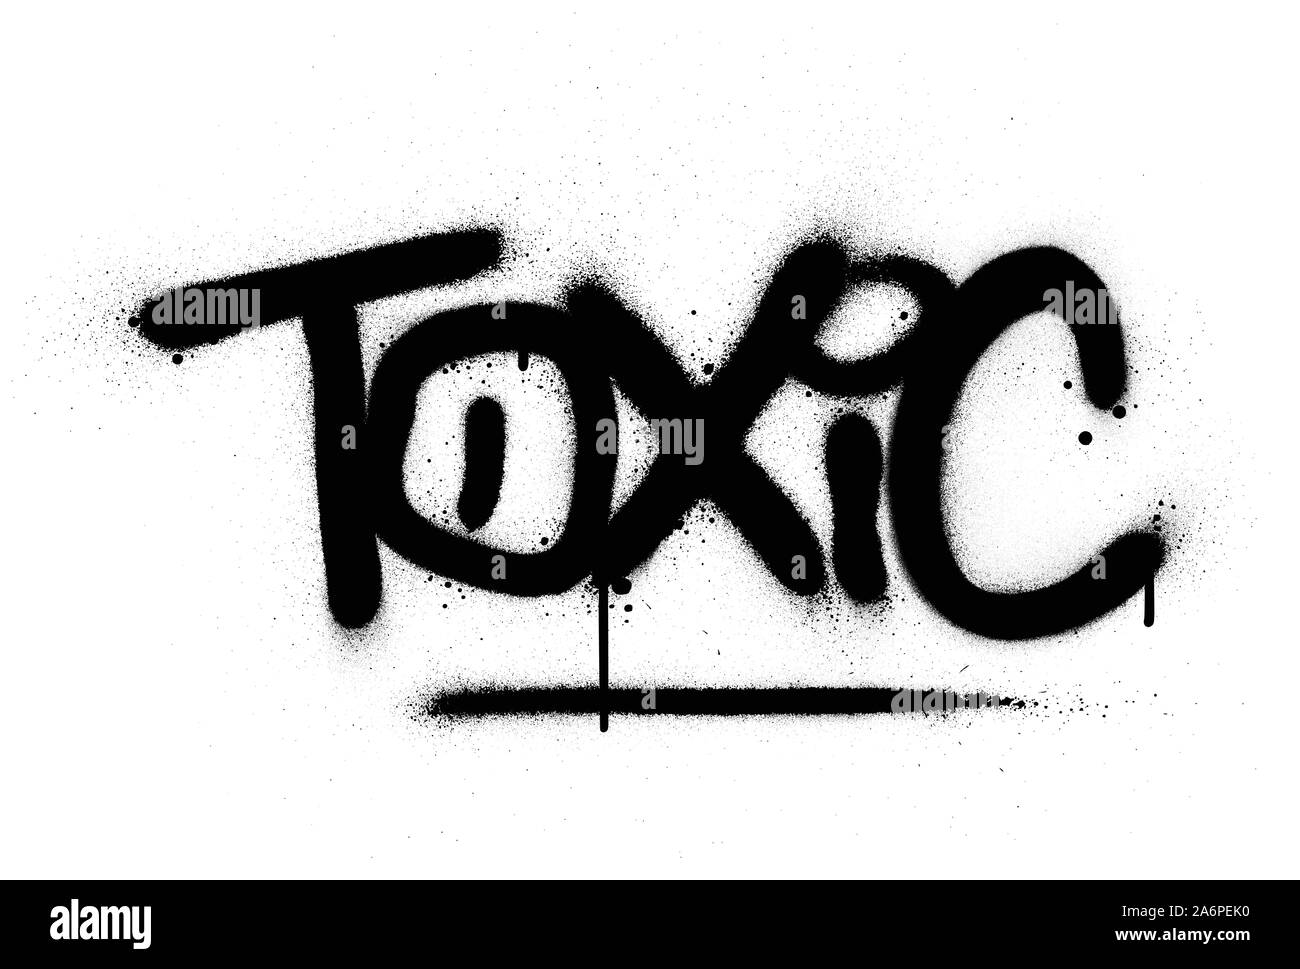 Graffiti giftige Wort in Schwarz auf Weiß gespritzt Stock Vektor